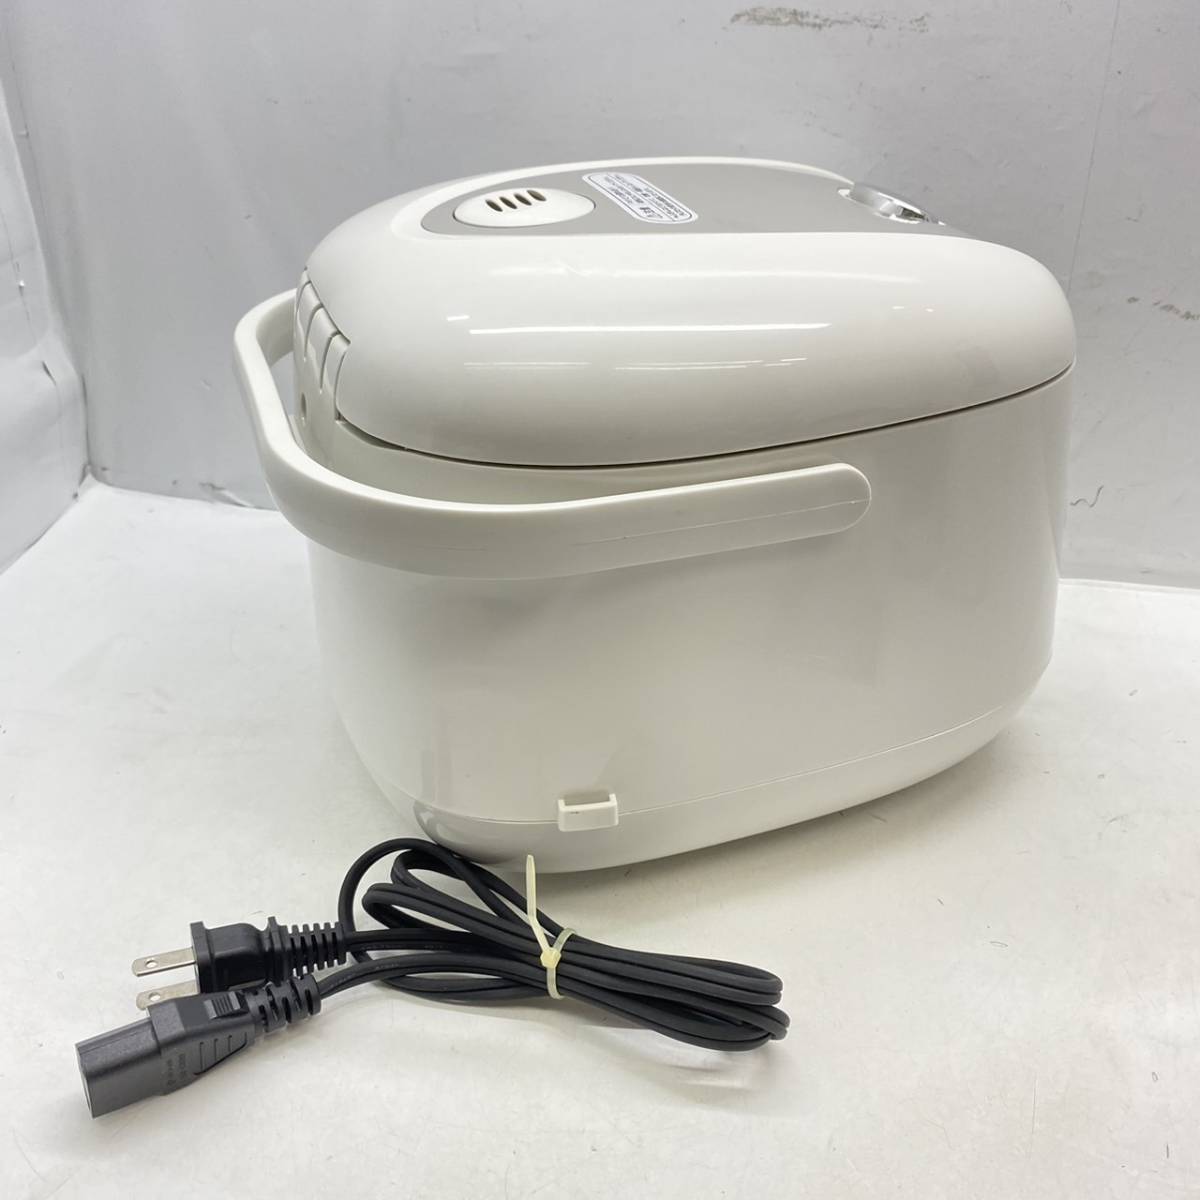 送料無料g27959 BONABONA 炊飯ジャー 3.5合 炊飯器 BK-R60-WH ホワイト 白 2018年製 取扱説明書付き_画像3